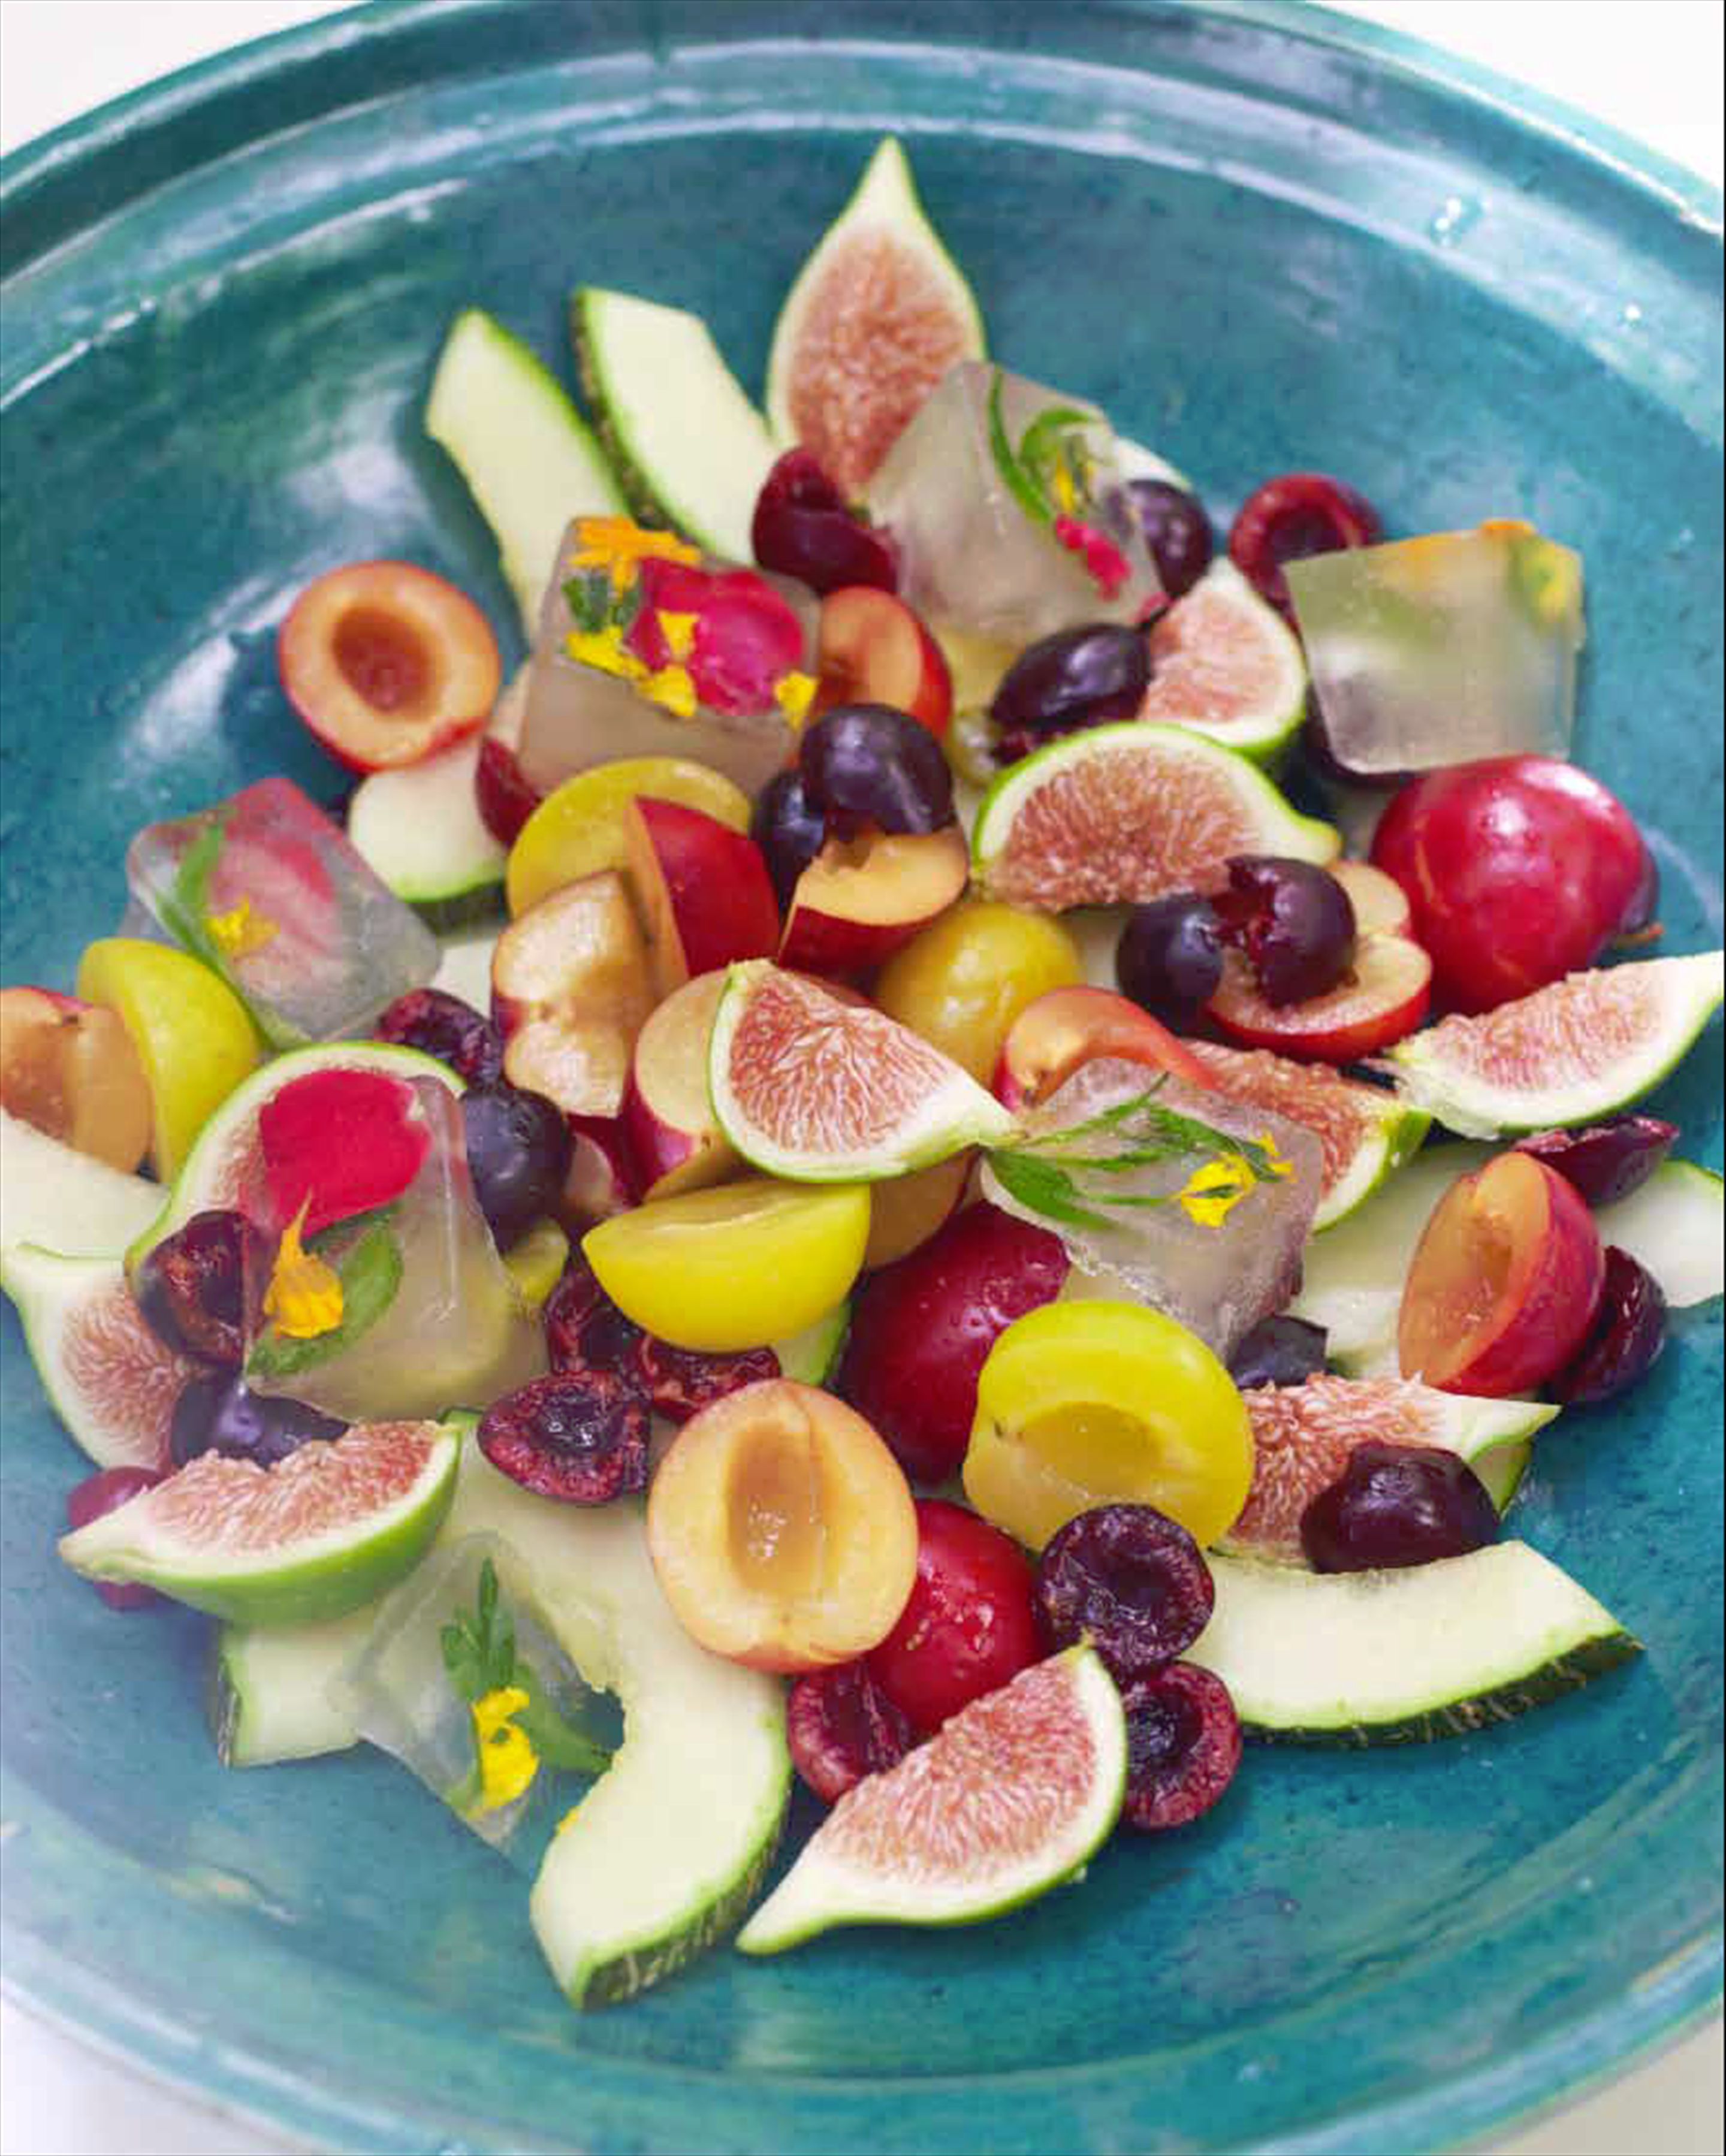 Moroccan fruit salad with lemon verbena iced syrup